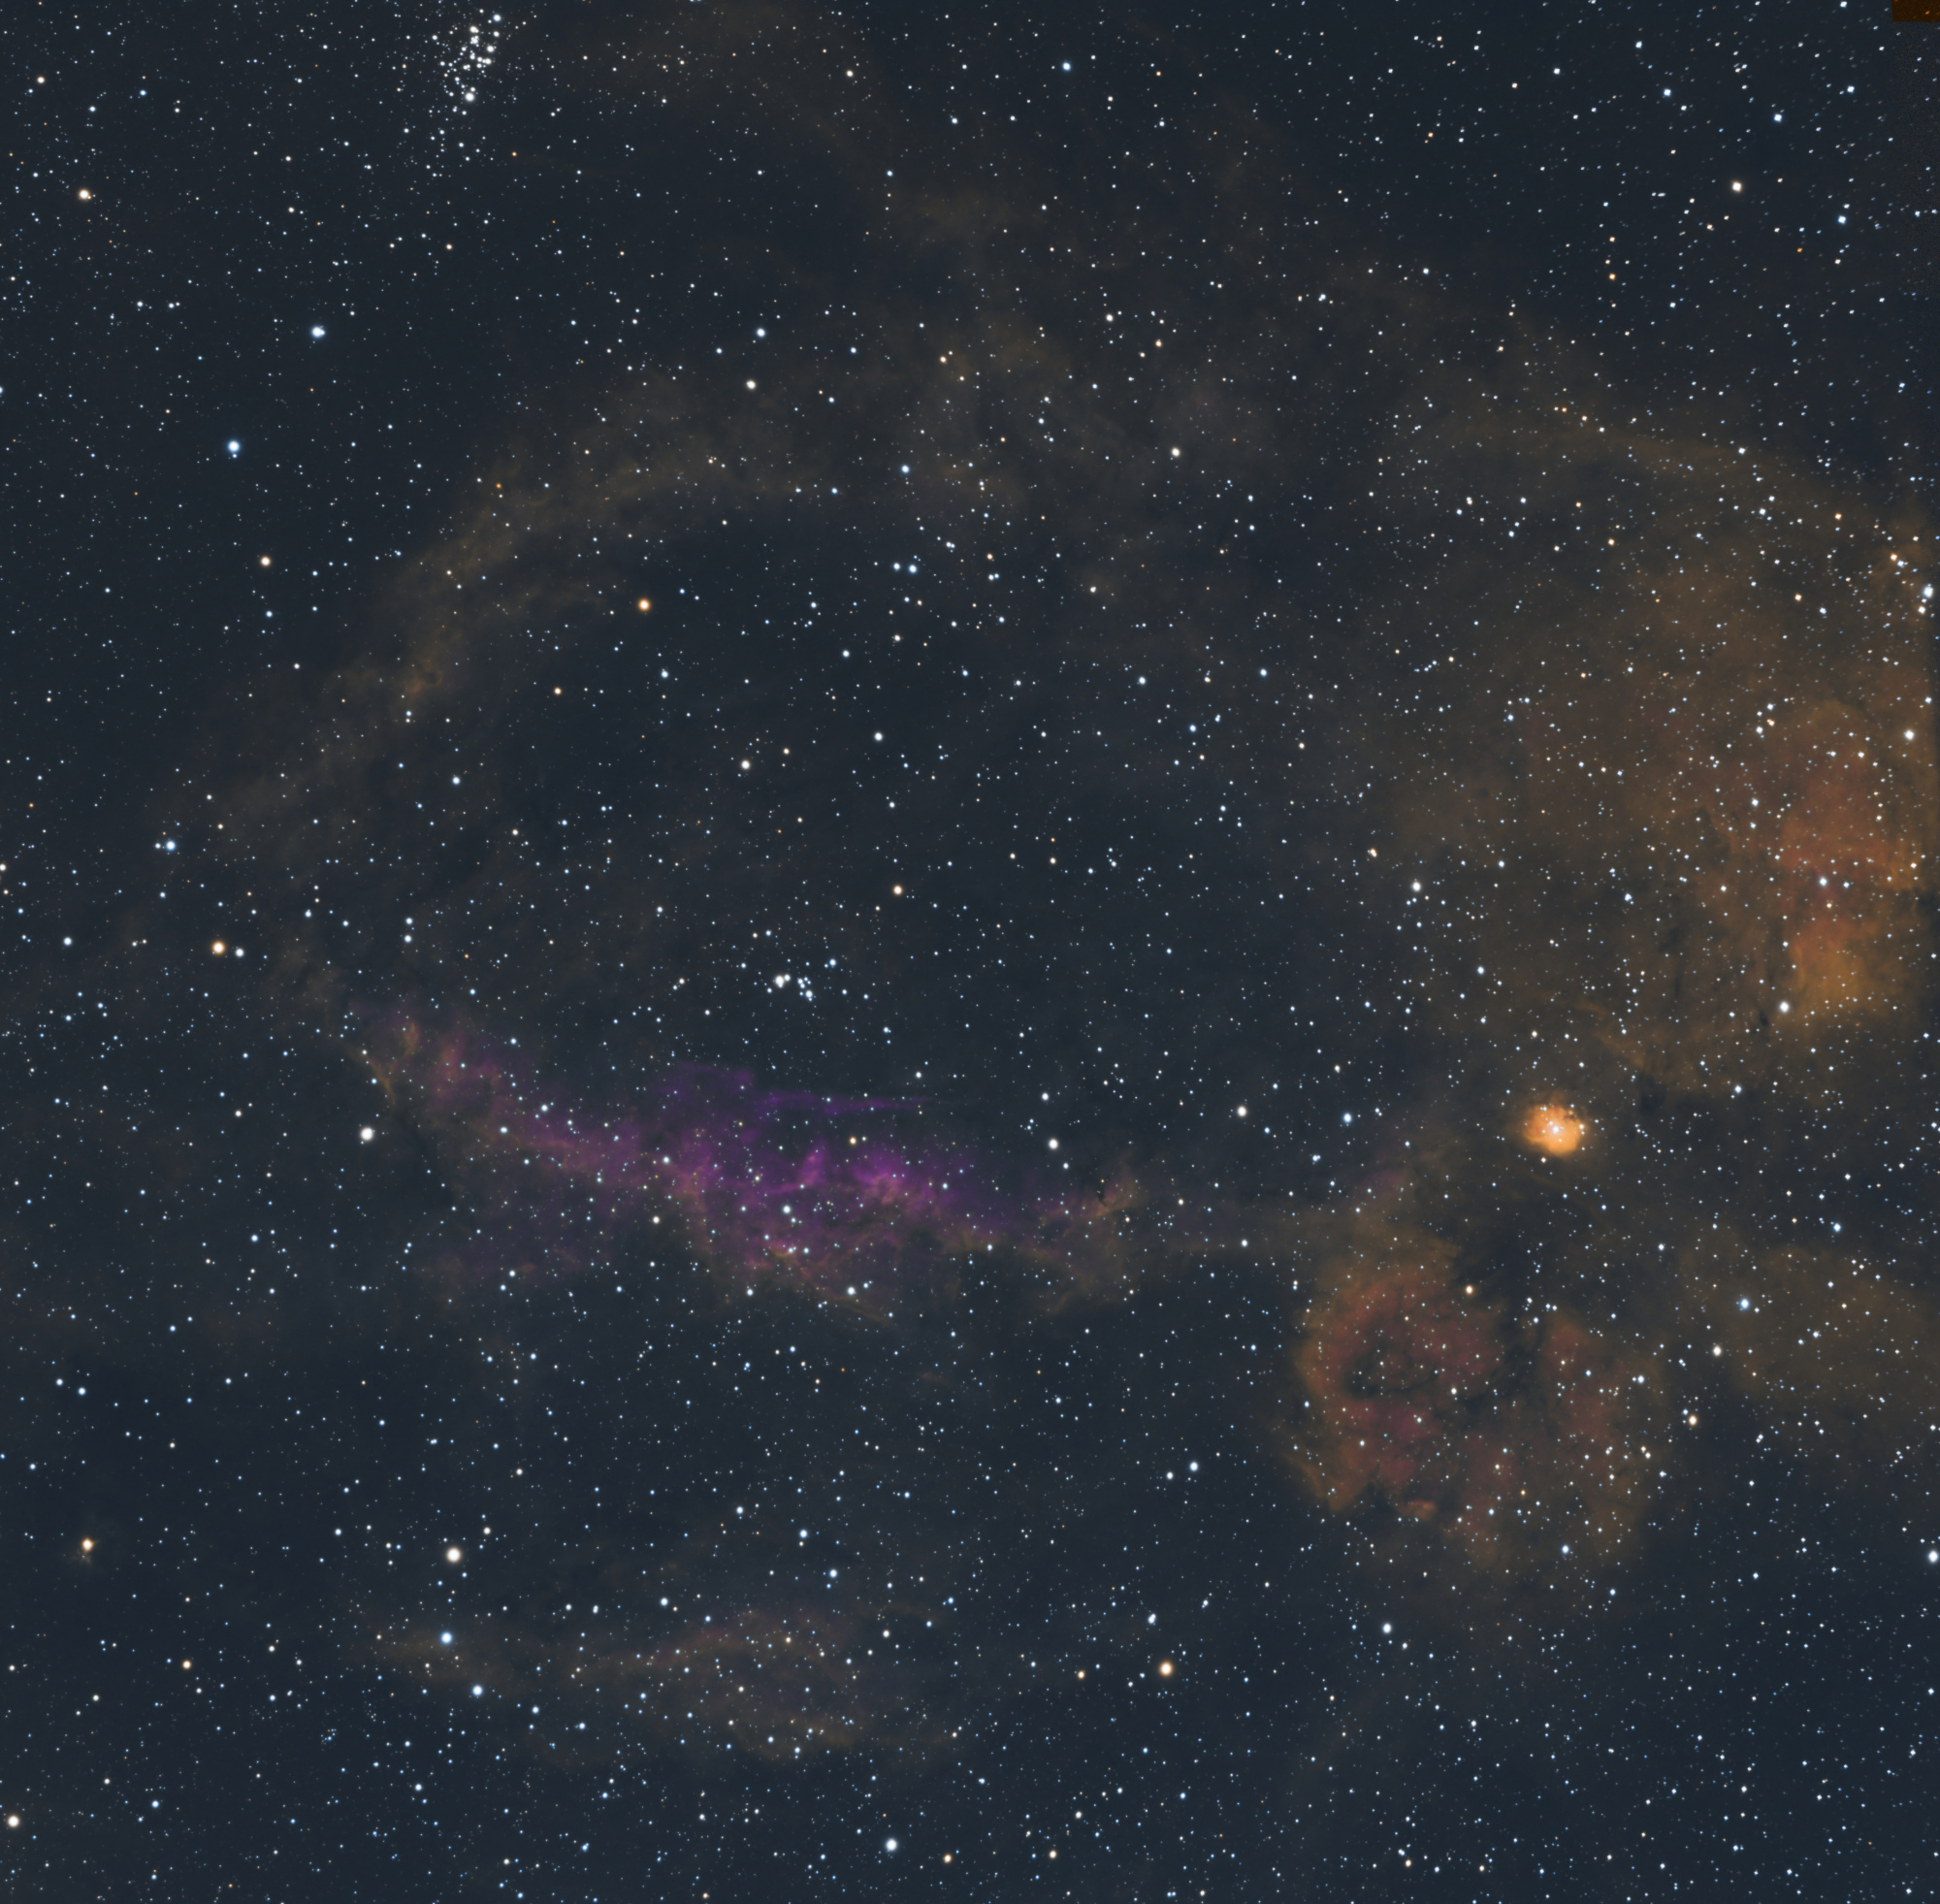 NGC7635_ASI6200_crop1.thumb.jpg.5143686e5a48f679a573dfb1484be1df.jpg